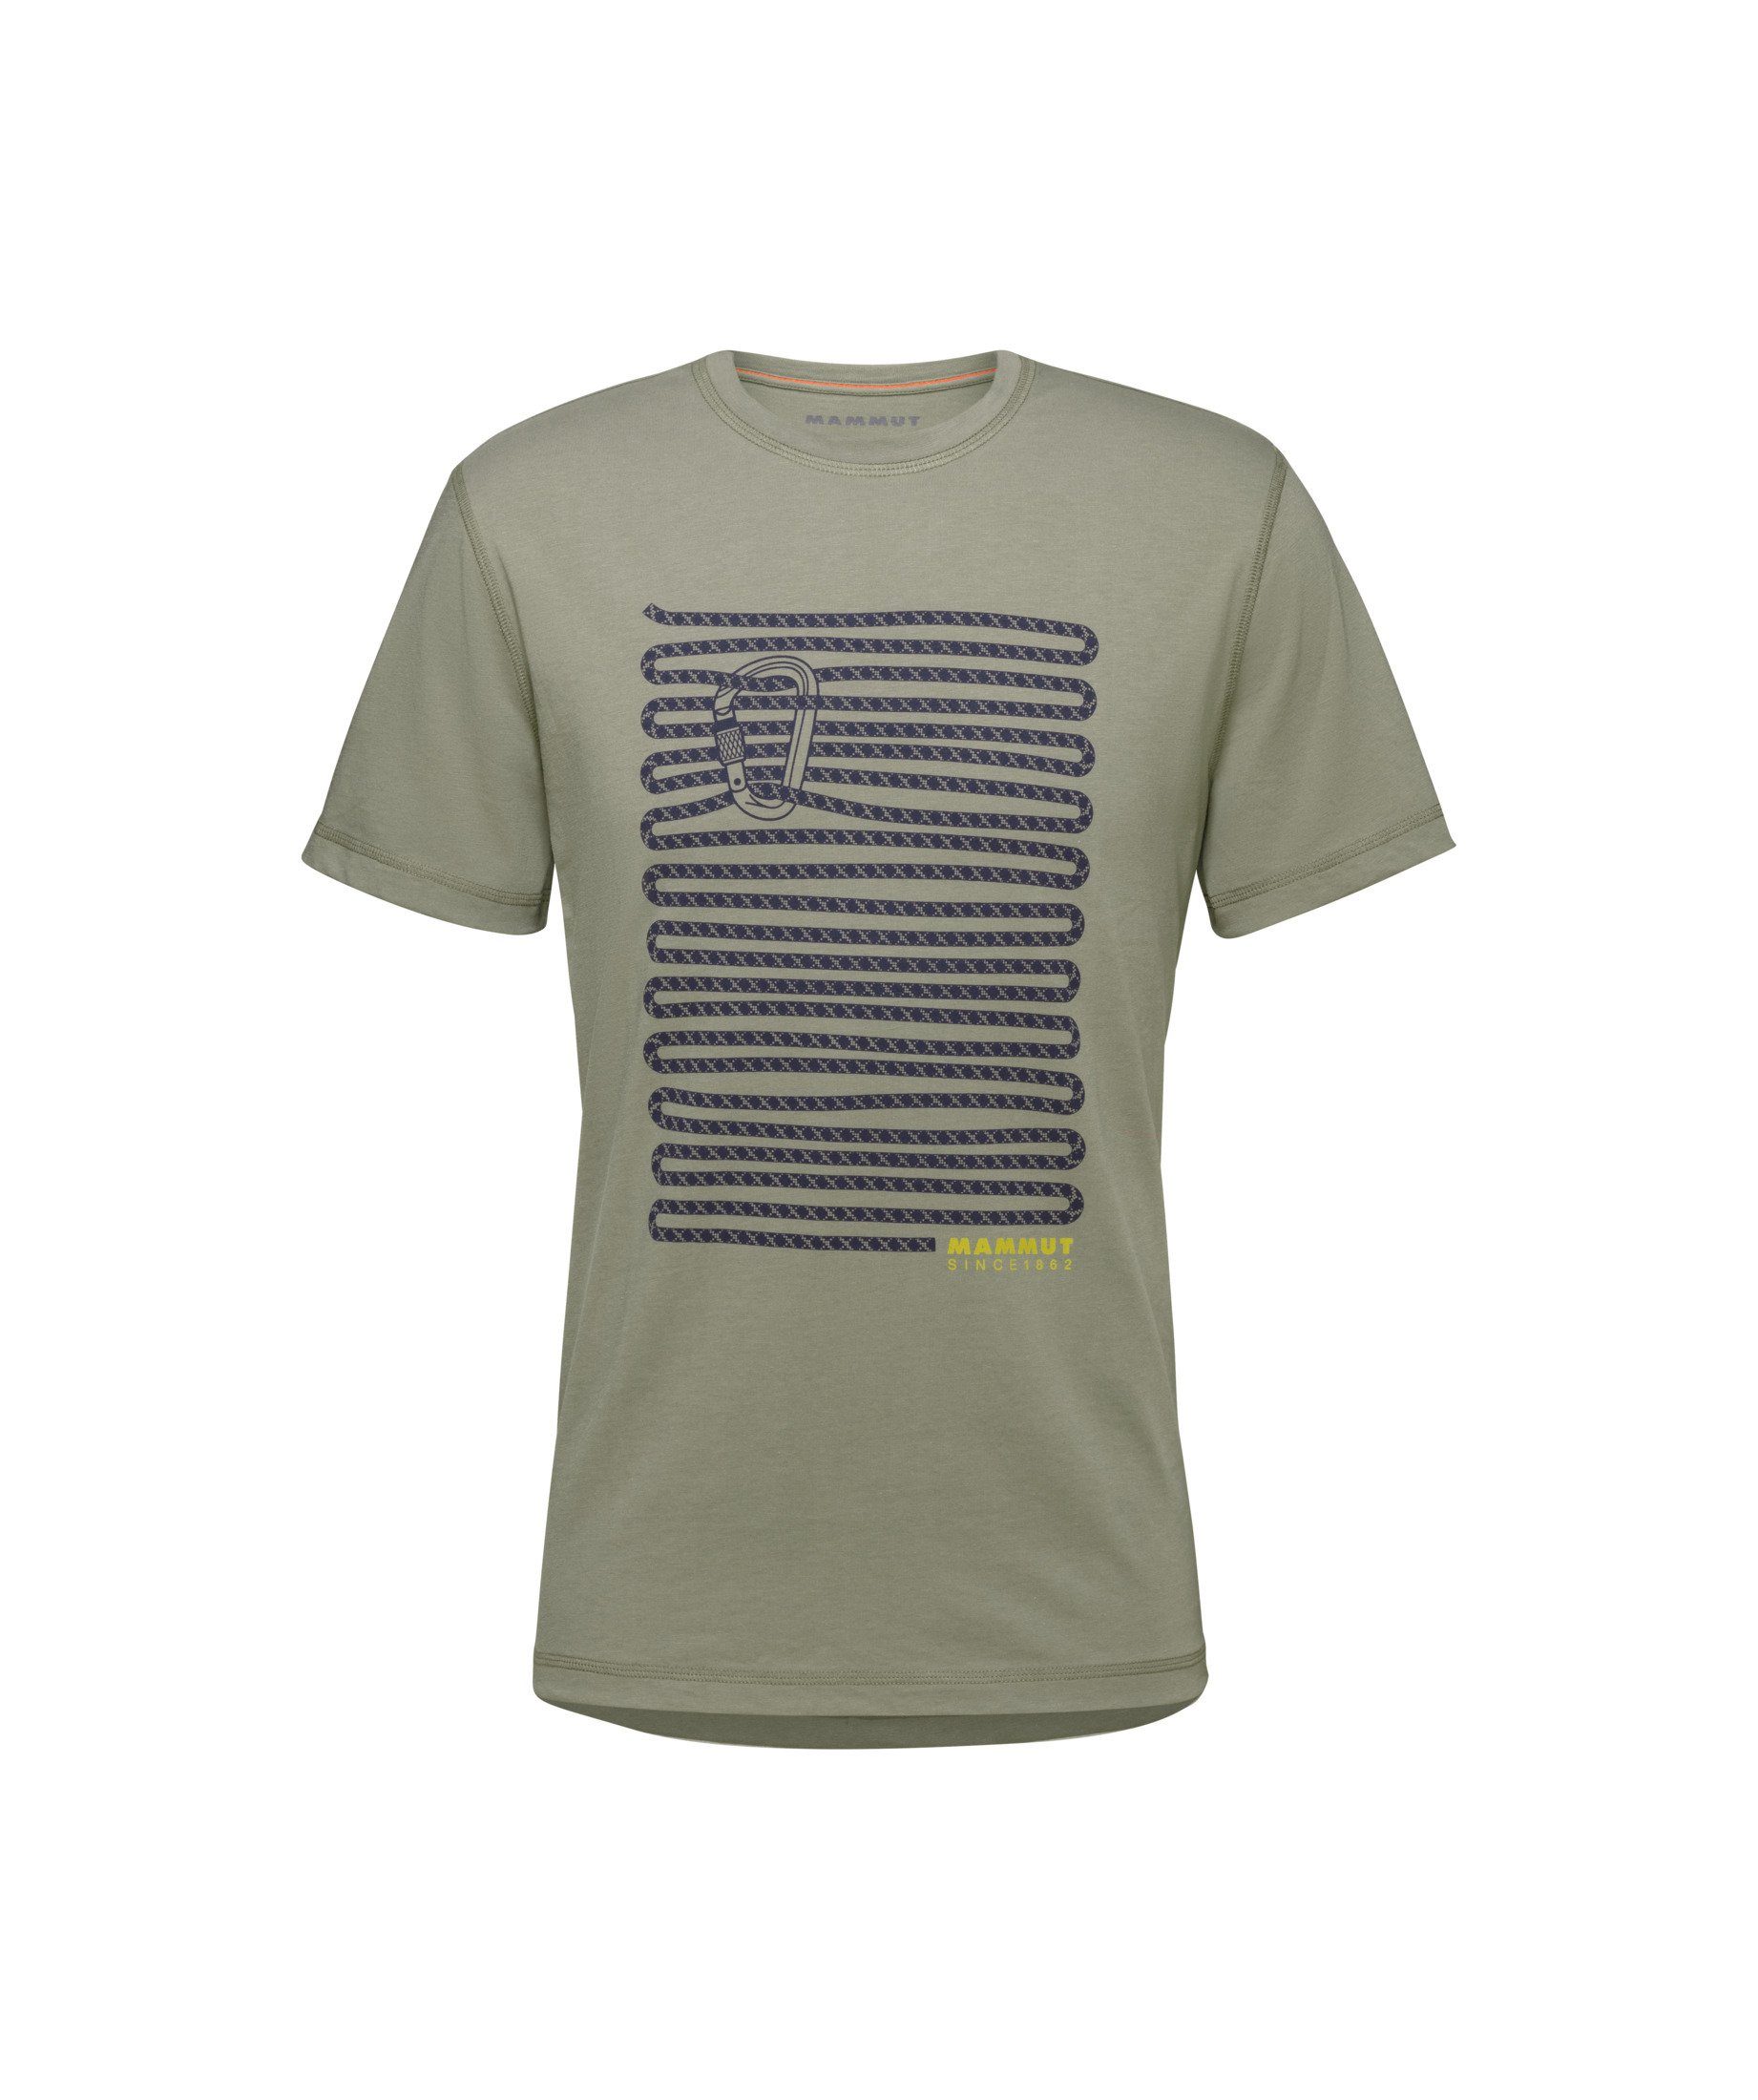 Mammut Peaks T-Shirt Herren Bio-Baumwolle leicht funktionell UVP 49,95  Sport Bekleidung €79.9